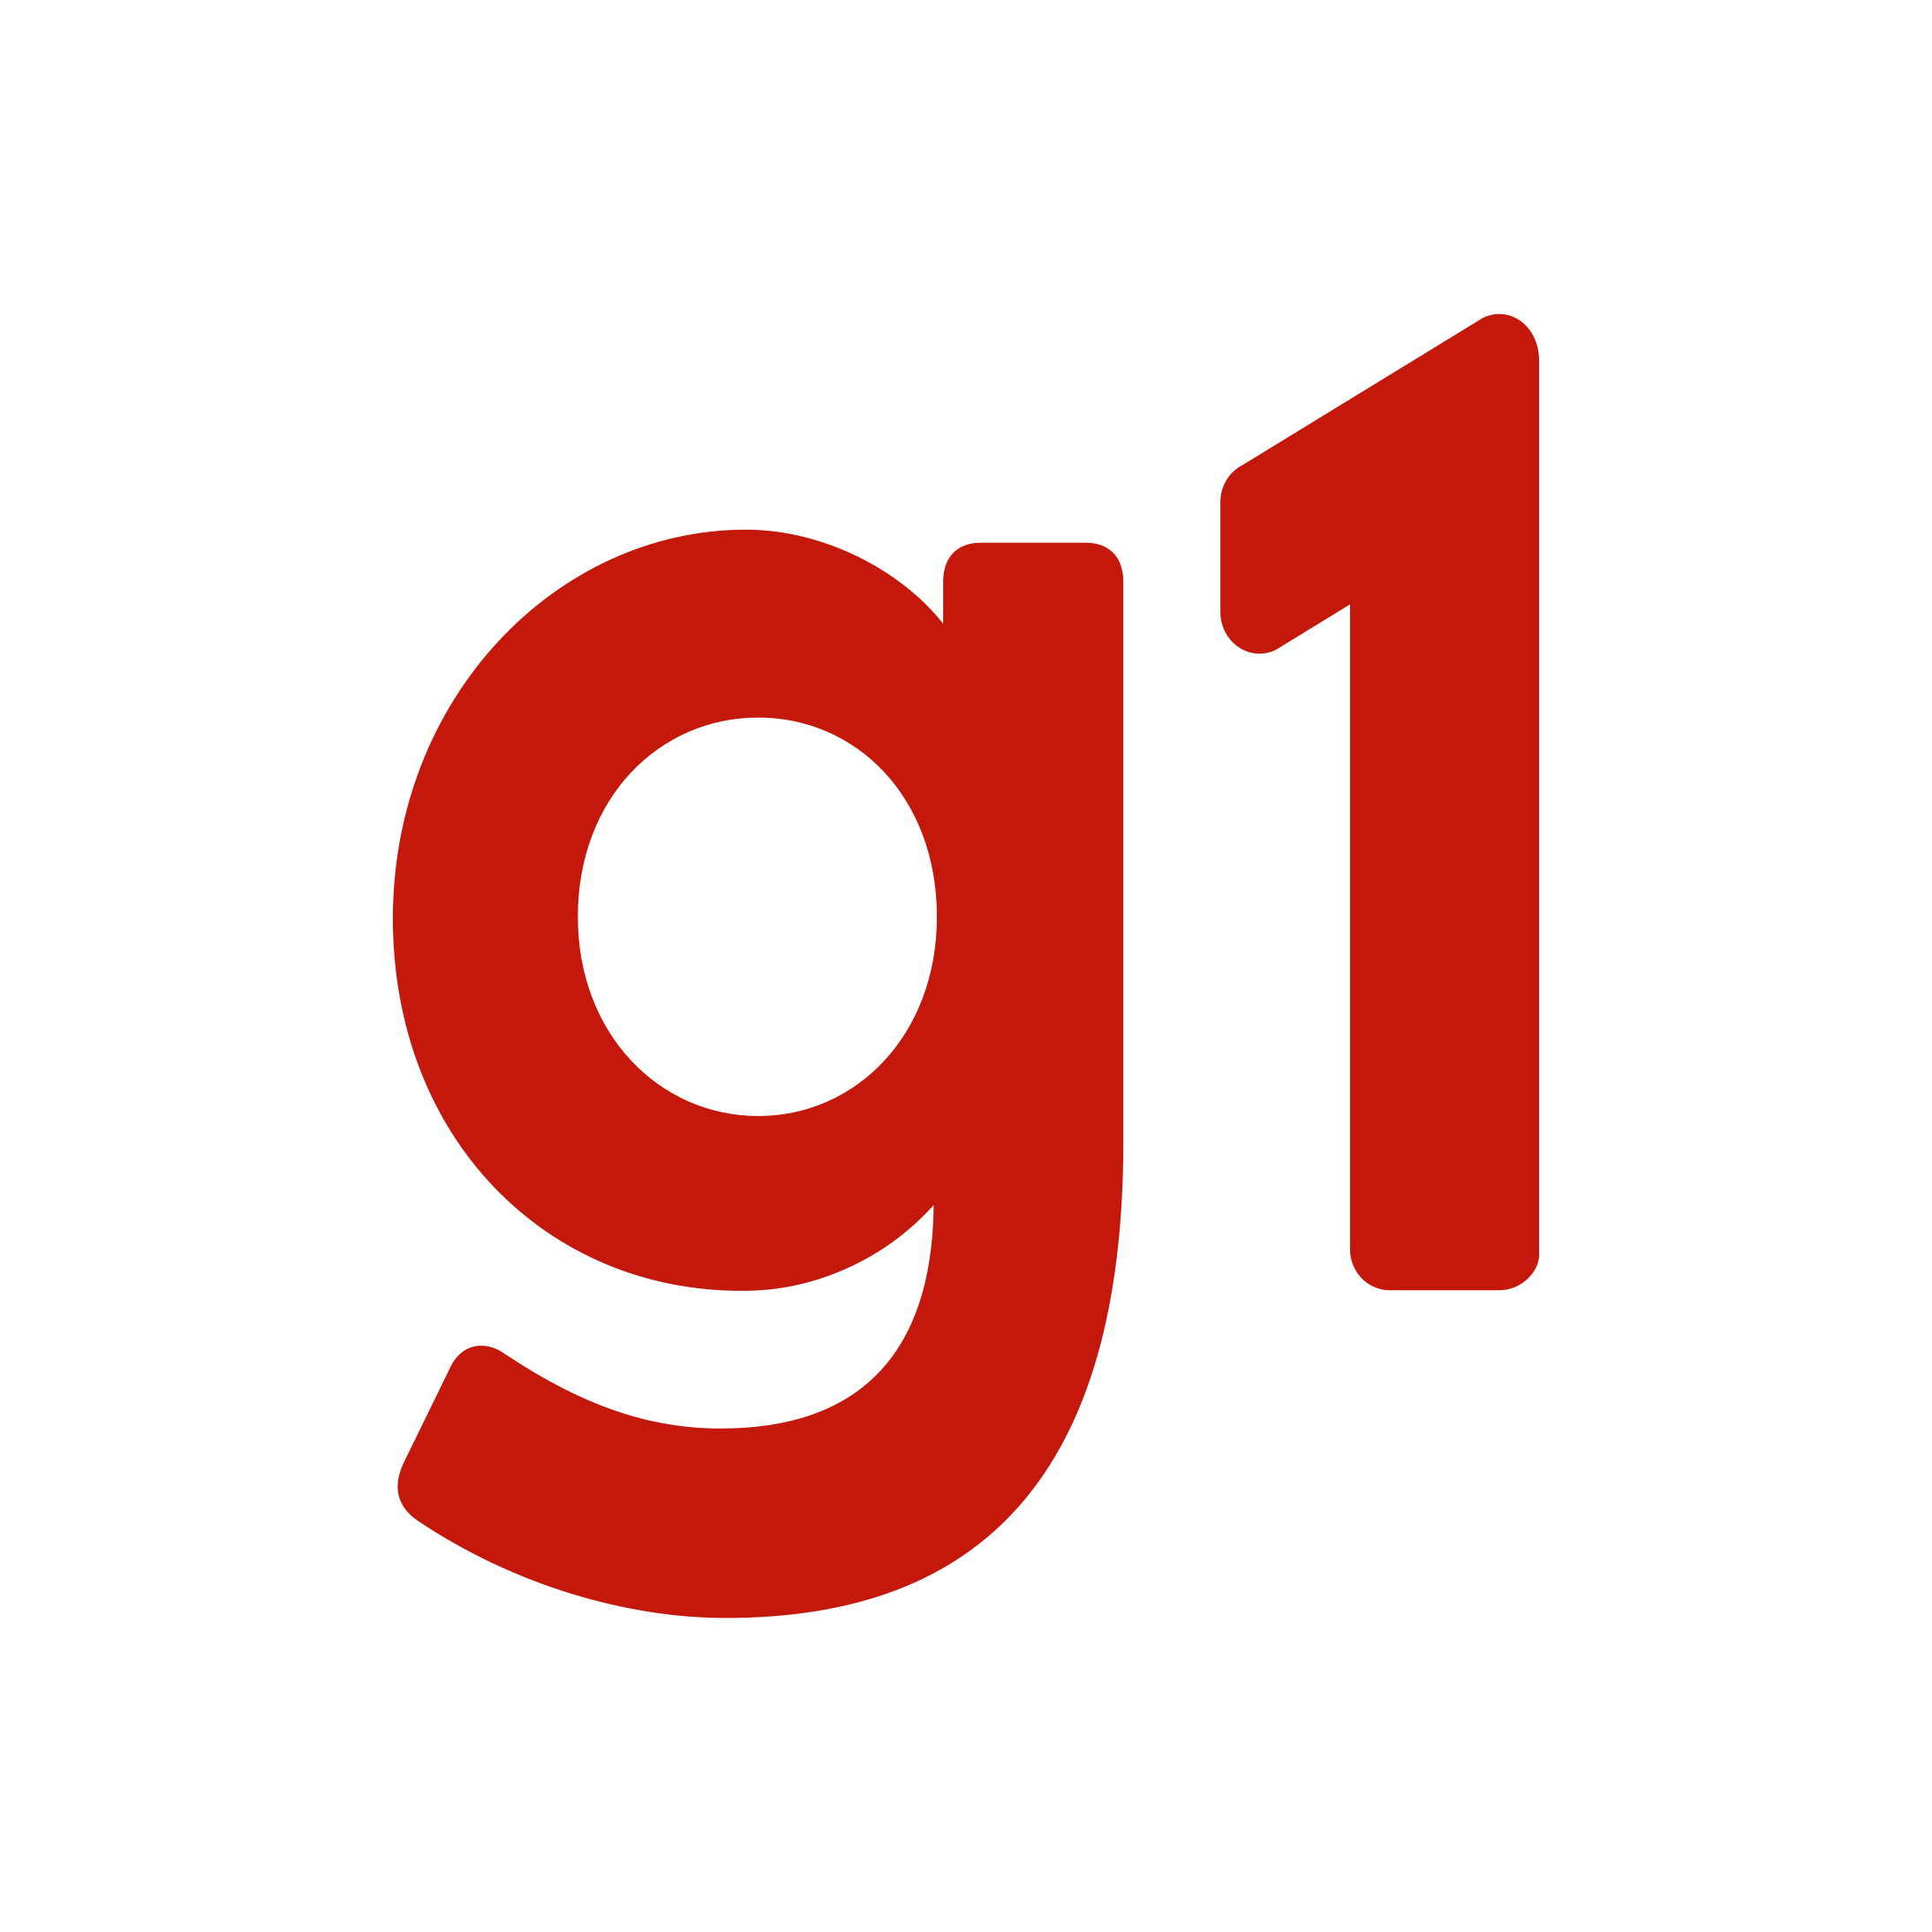 g1